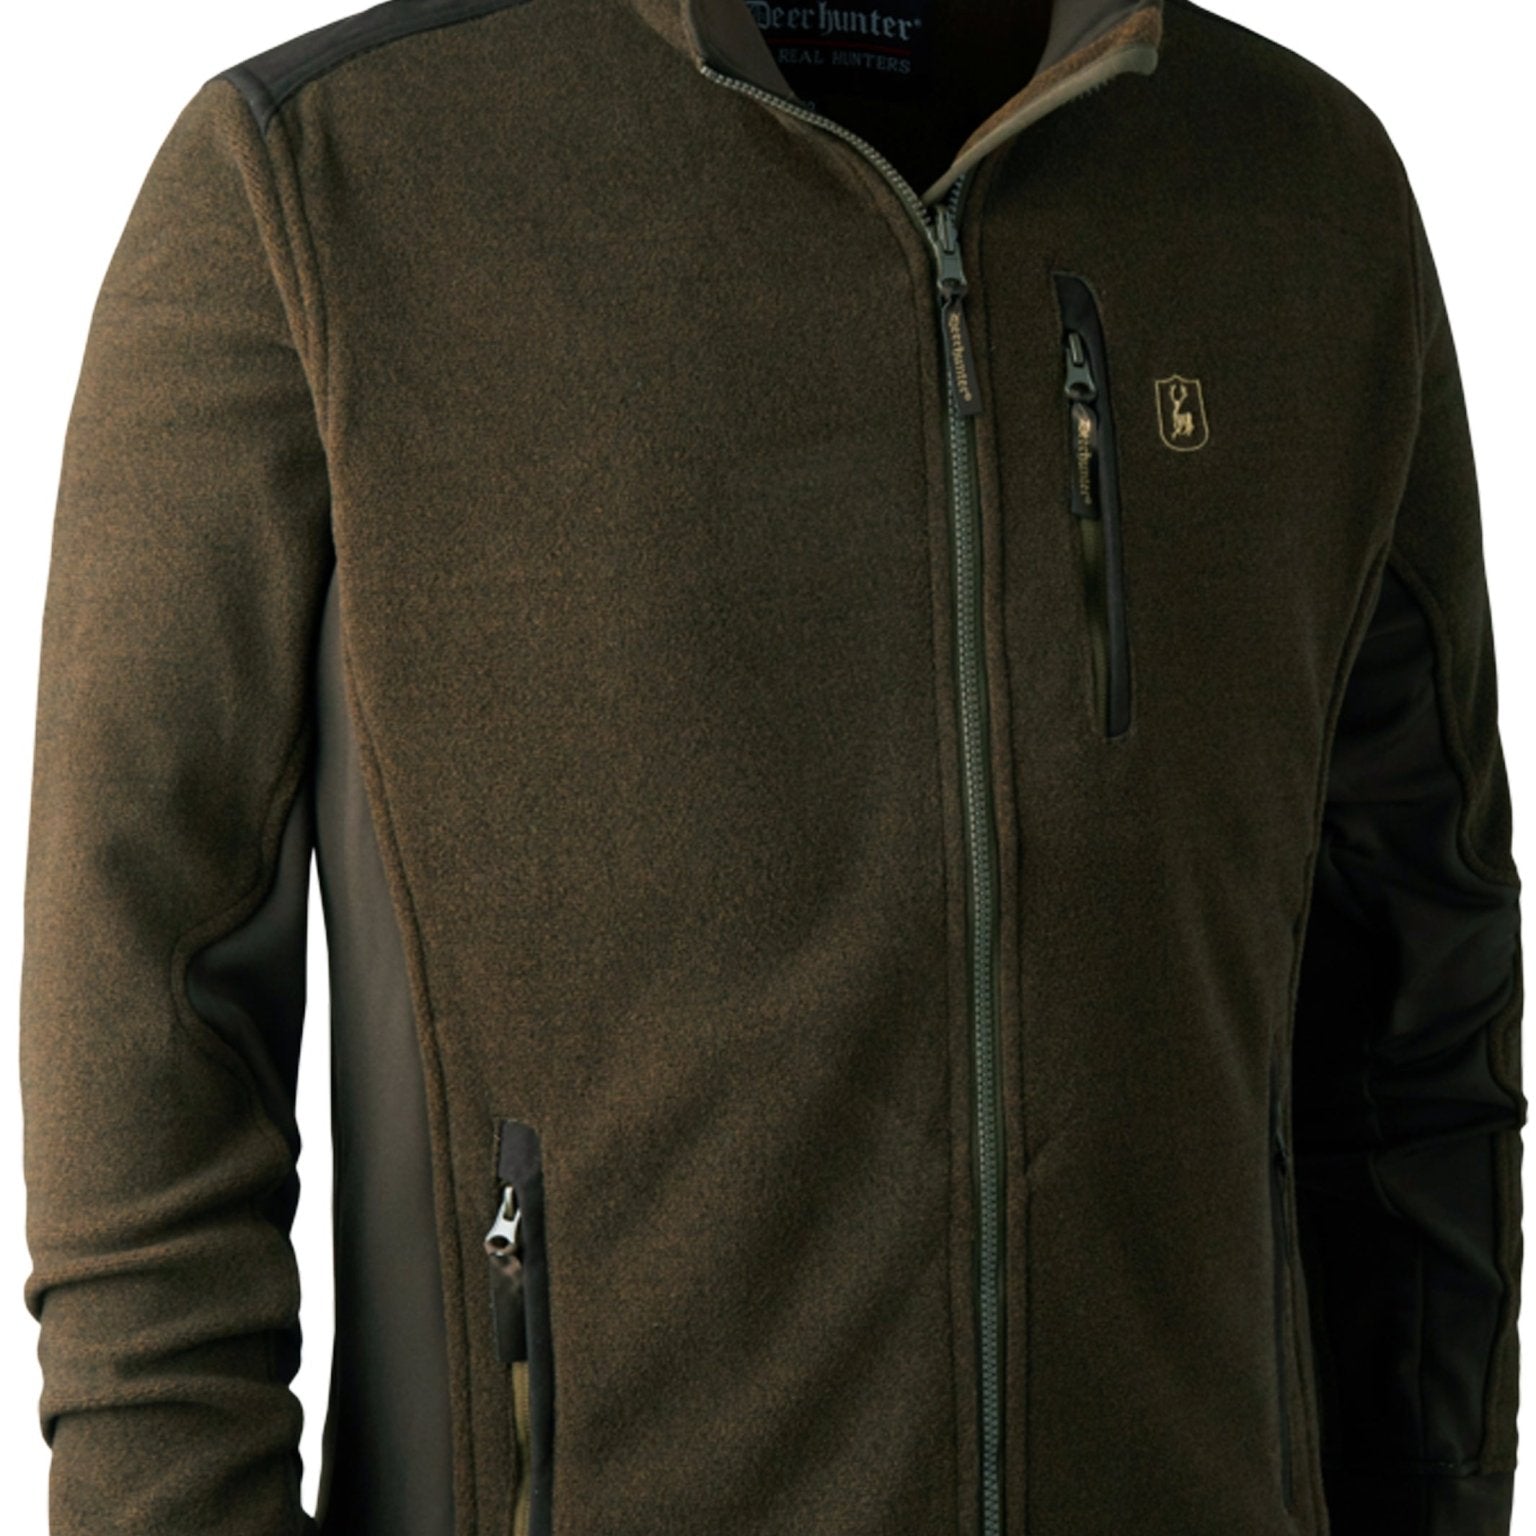 4elementsclothingDeerhunterDeerhunter - Muflon Zip-In Fleece Jacket / Mens Insulated fleece JacketFleece & Gilet5721-376-48